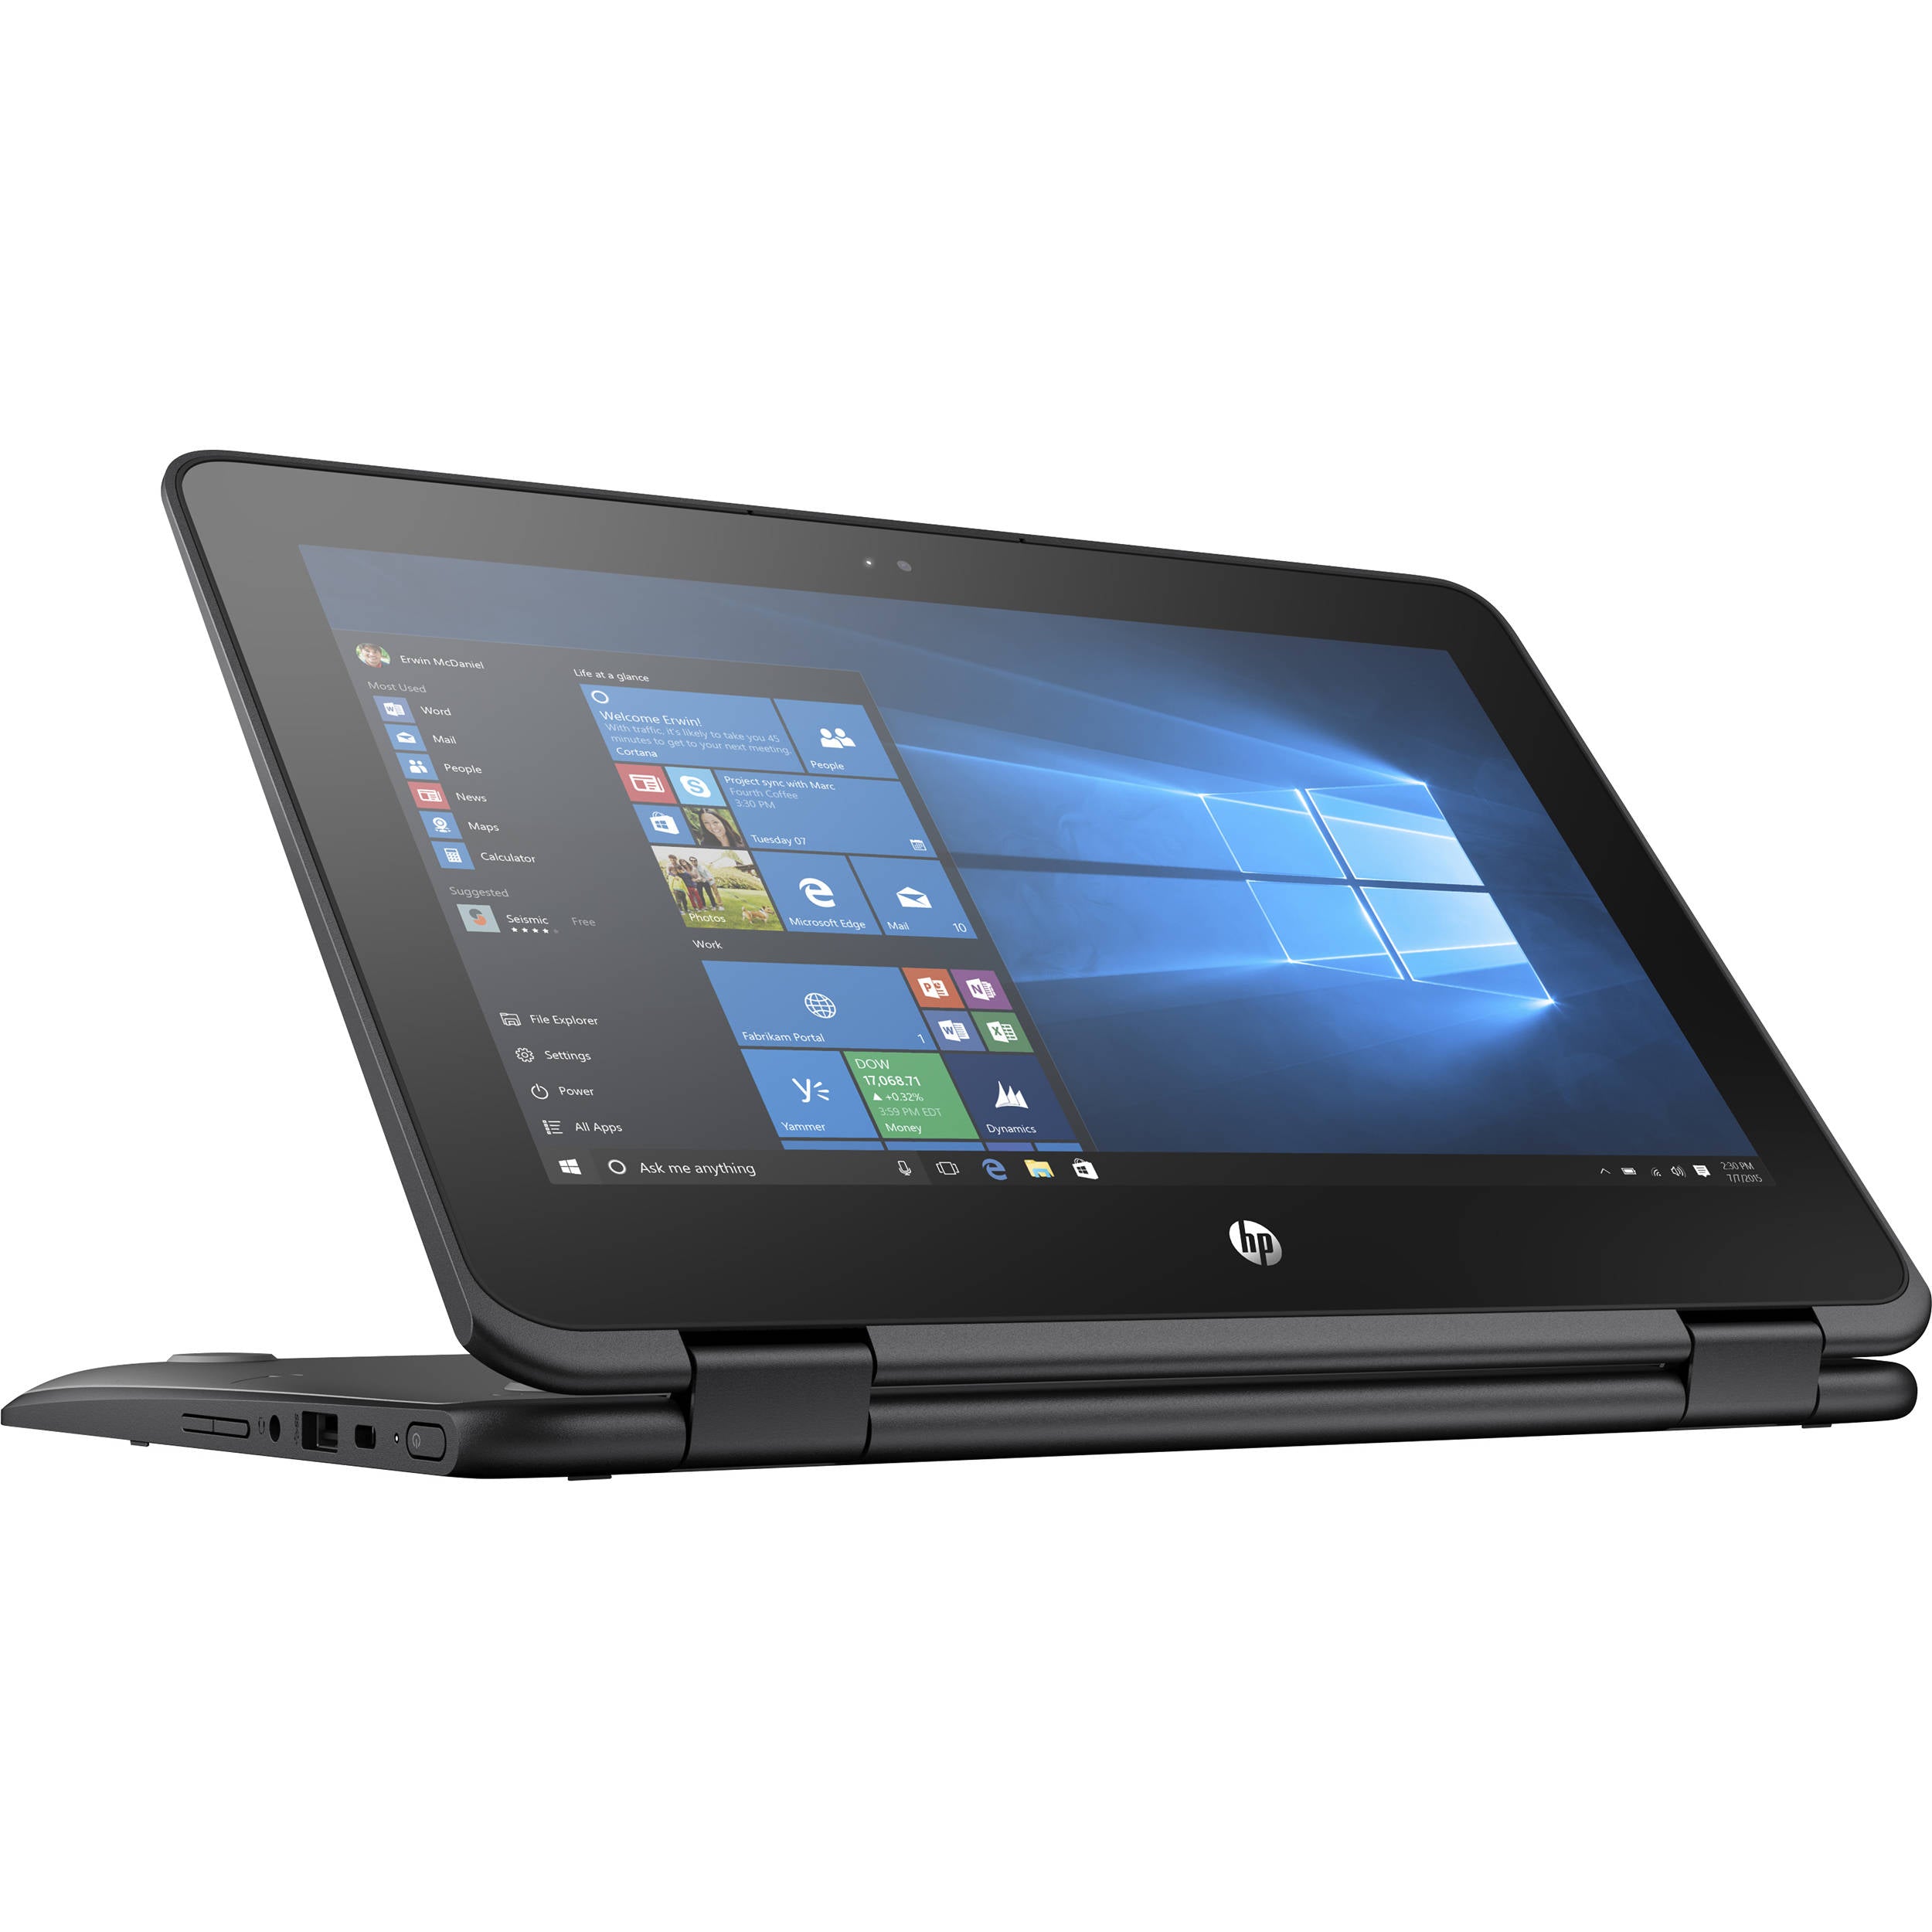 HP ProBook x360 11 G2 EE intel core M3-7Y30 8GB RAM 128GB SSD